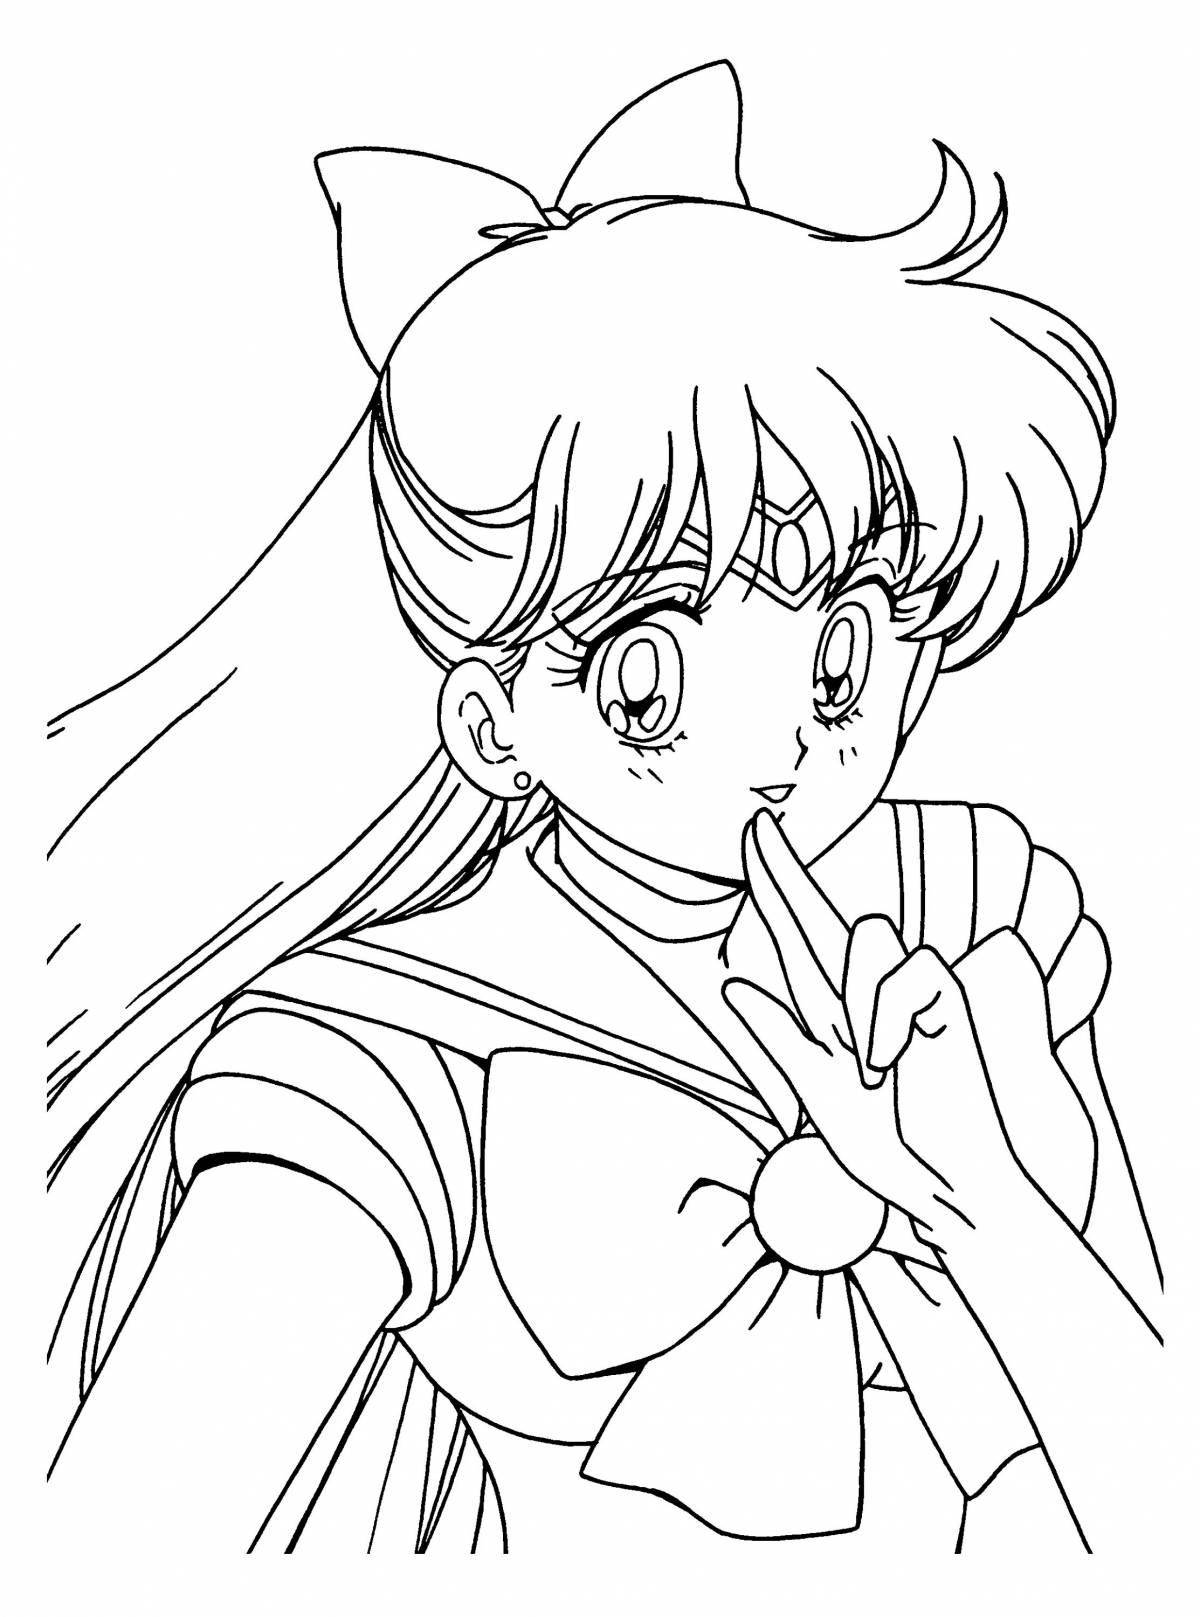 Sailor moon adorable coloring book